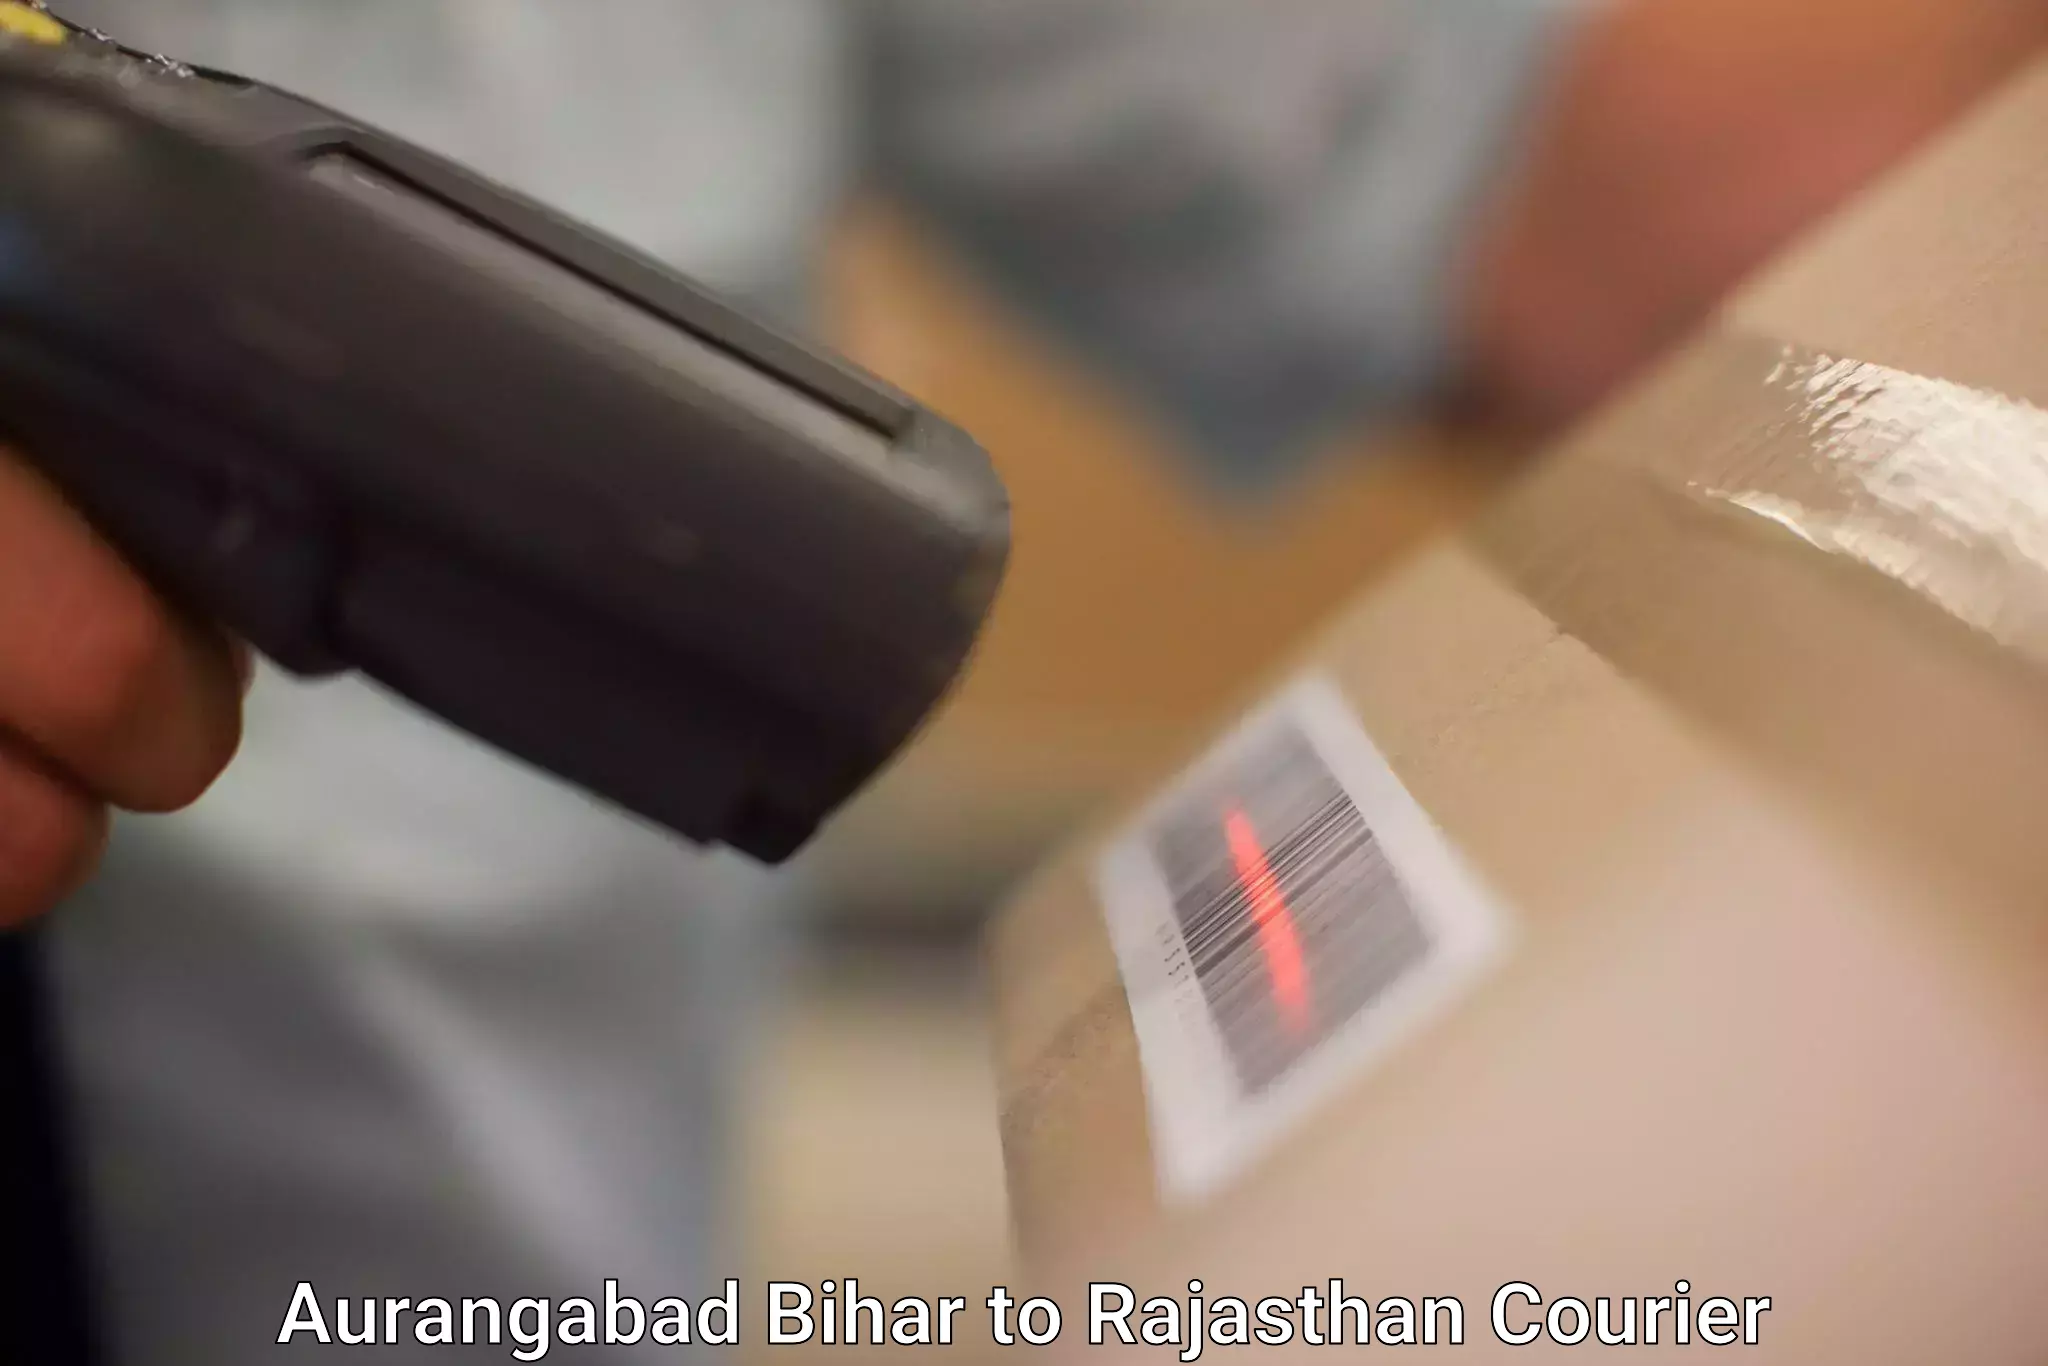 Express courier facilities Aurangabad Bihar to Rajasthan